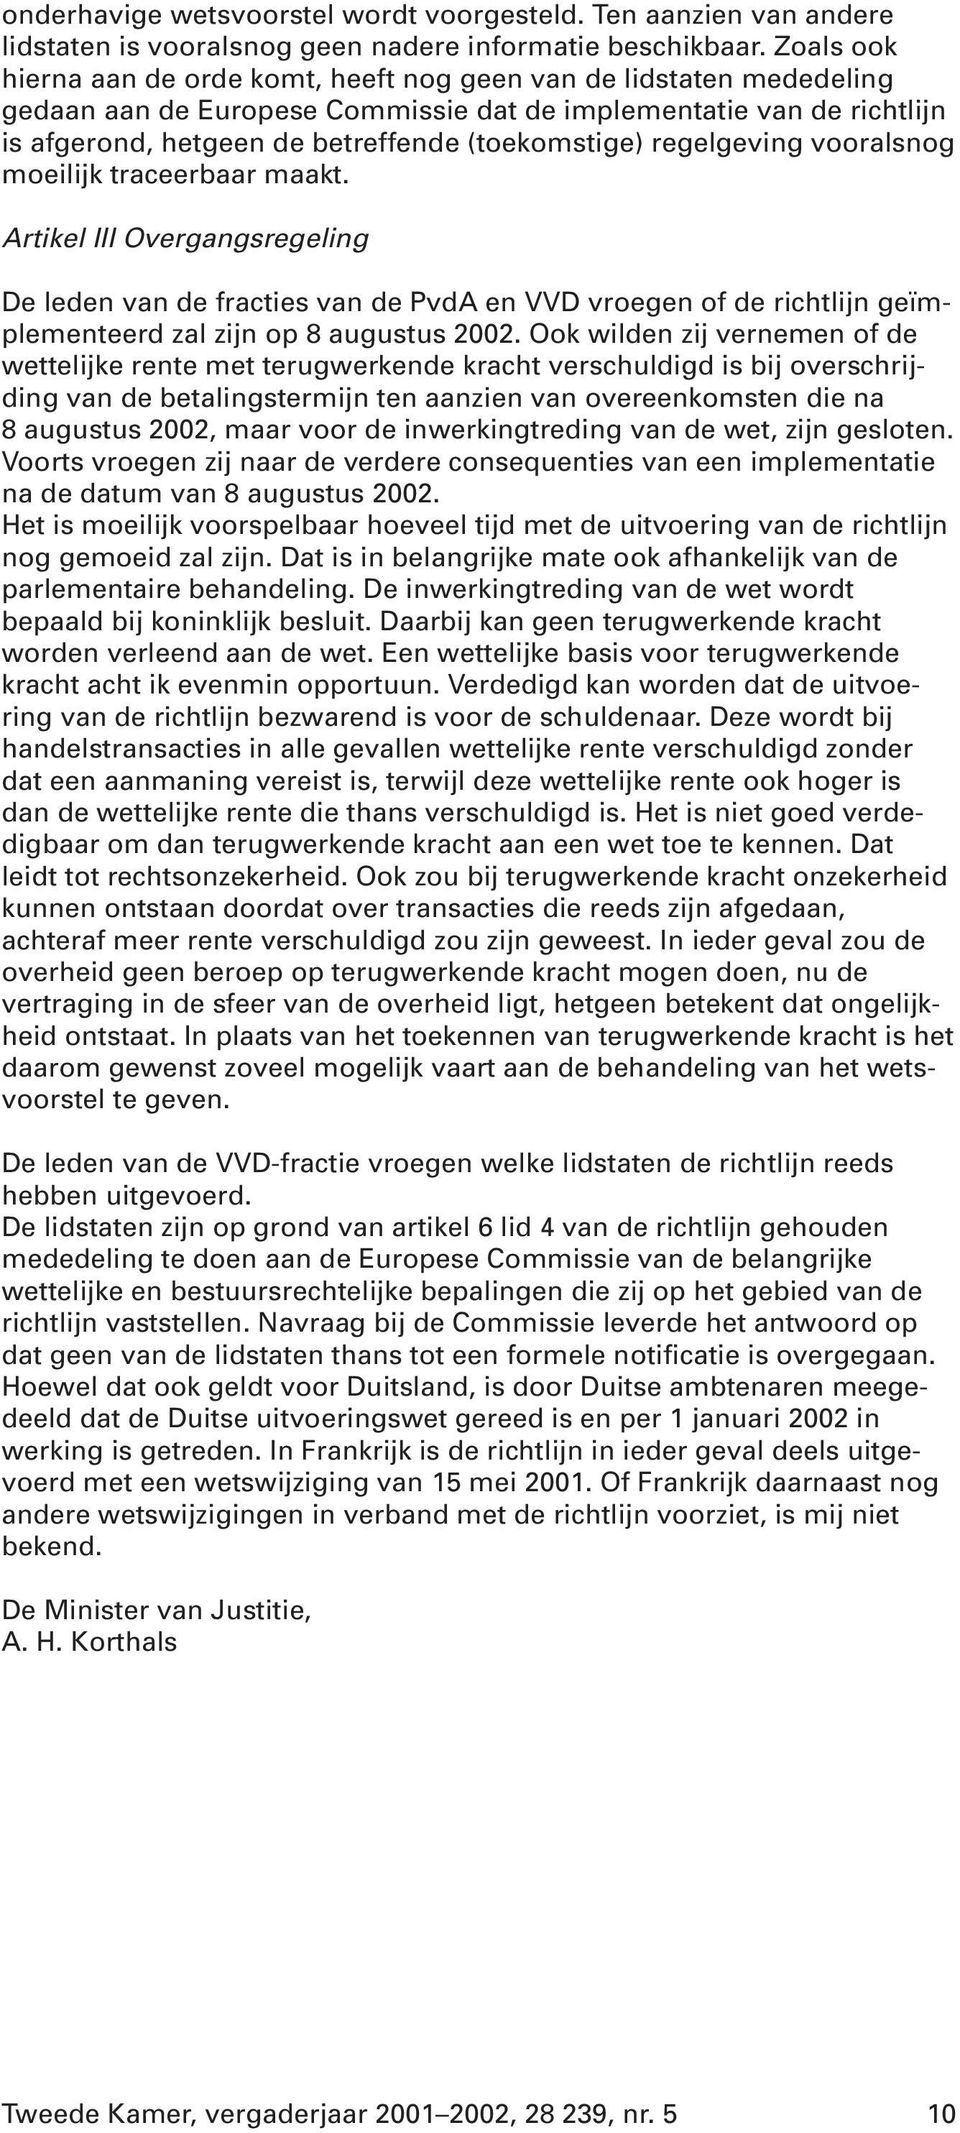 regelgeving vooralsnog moeilijk traceerbaar maakt. Artikel III Overgangsregeling De leden van de fracties van de PvdA en VVD vroegen of de richtlijn geïmplementeerd zal zijn op 8 augustus 2002.